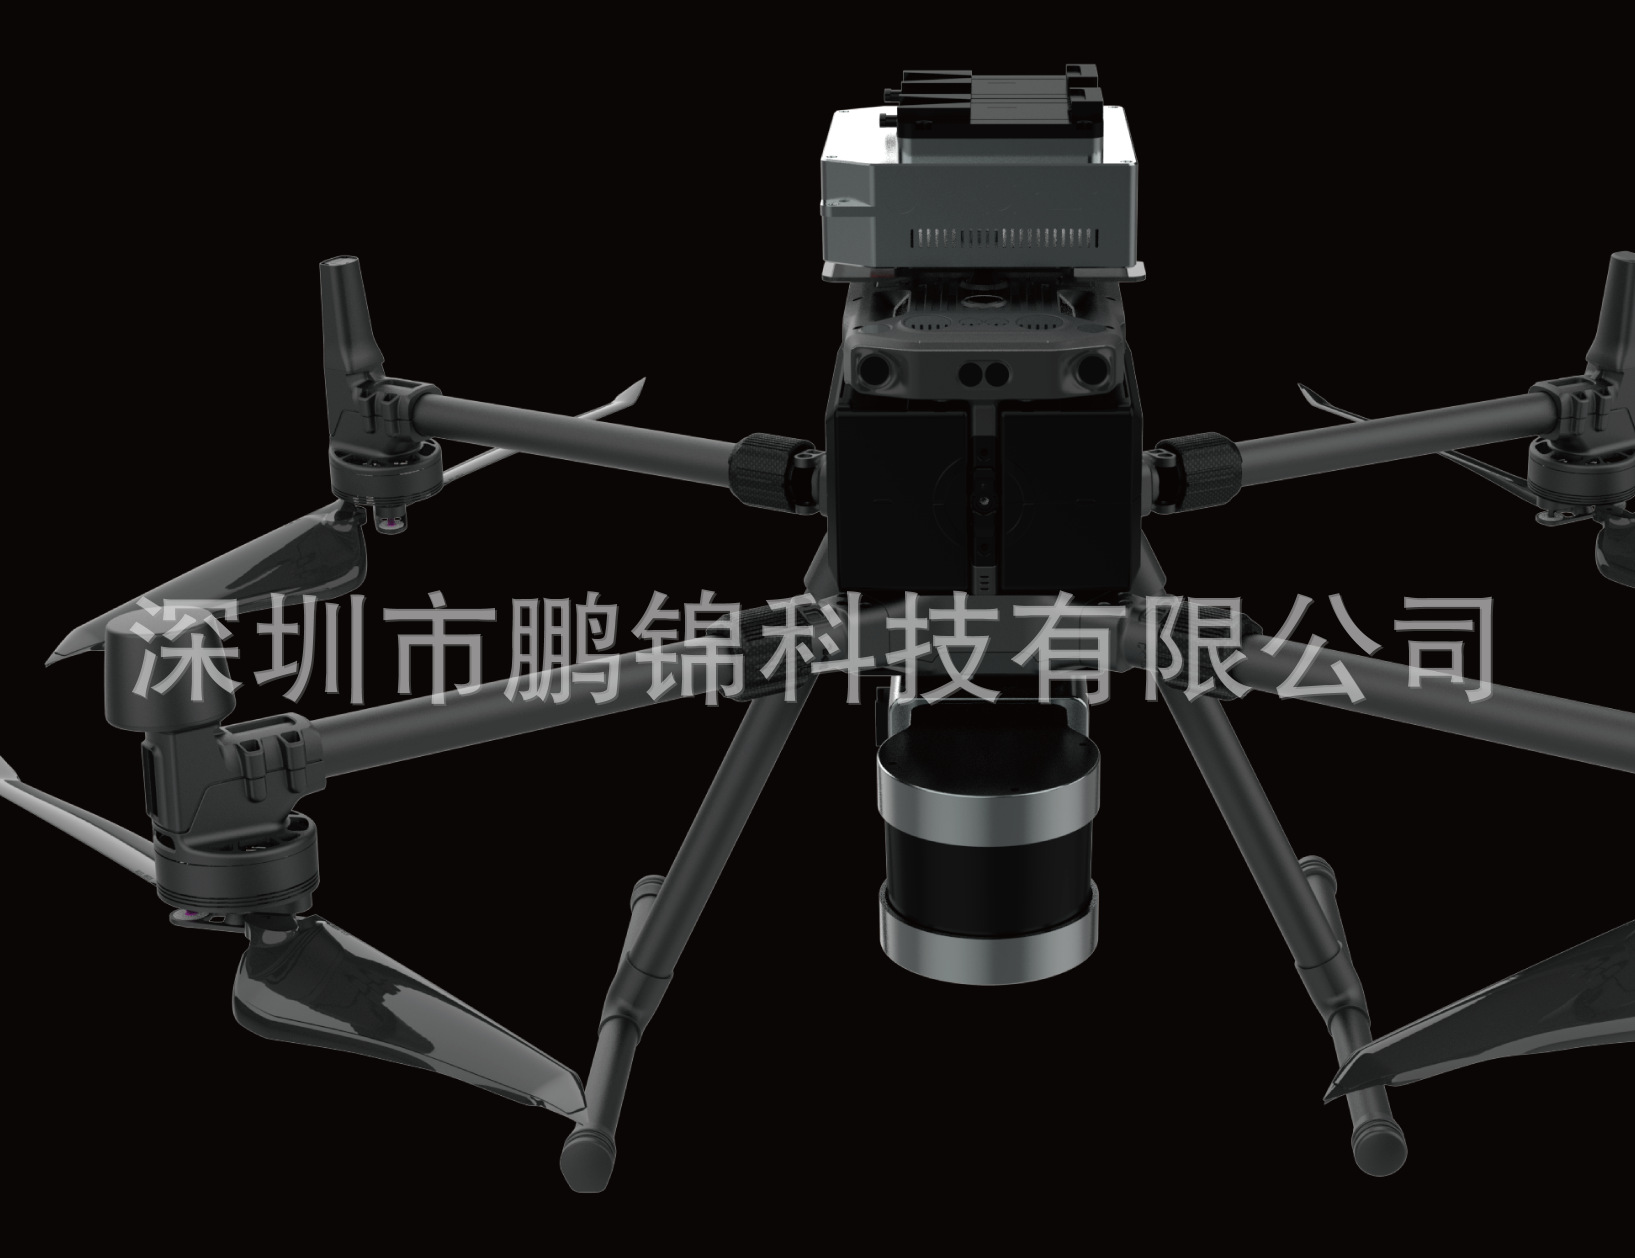 大疆M300RTK无人机搭载三维激光扫描仪-RS300